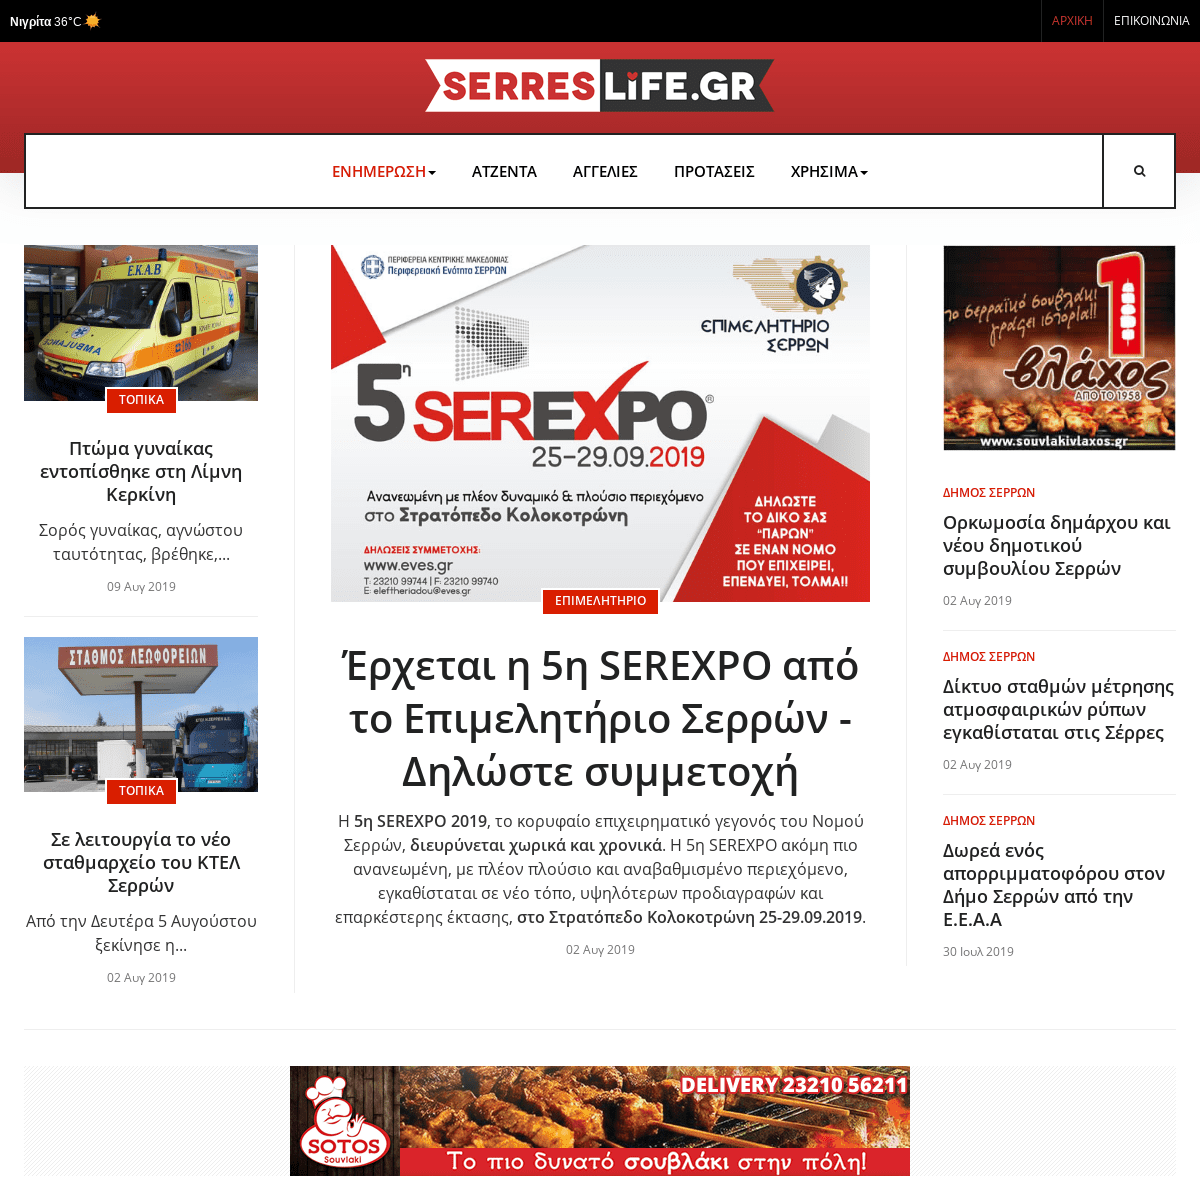 serresLife.gr - Ειδήσεις,εκδηλώσεις και ότι άλλο συμβαίνει στις Σέρρες